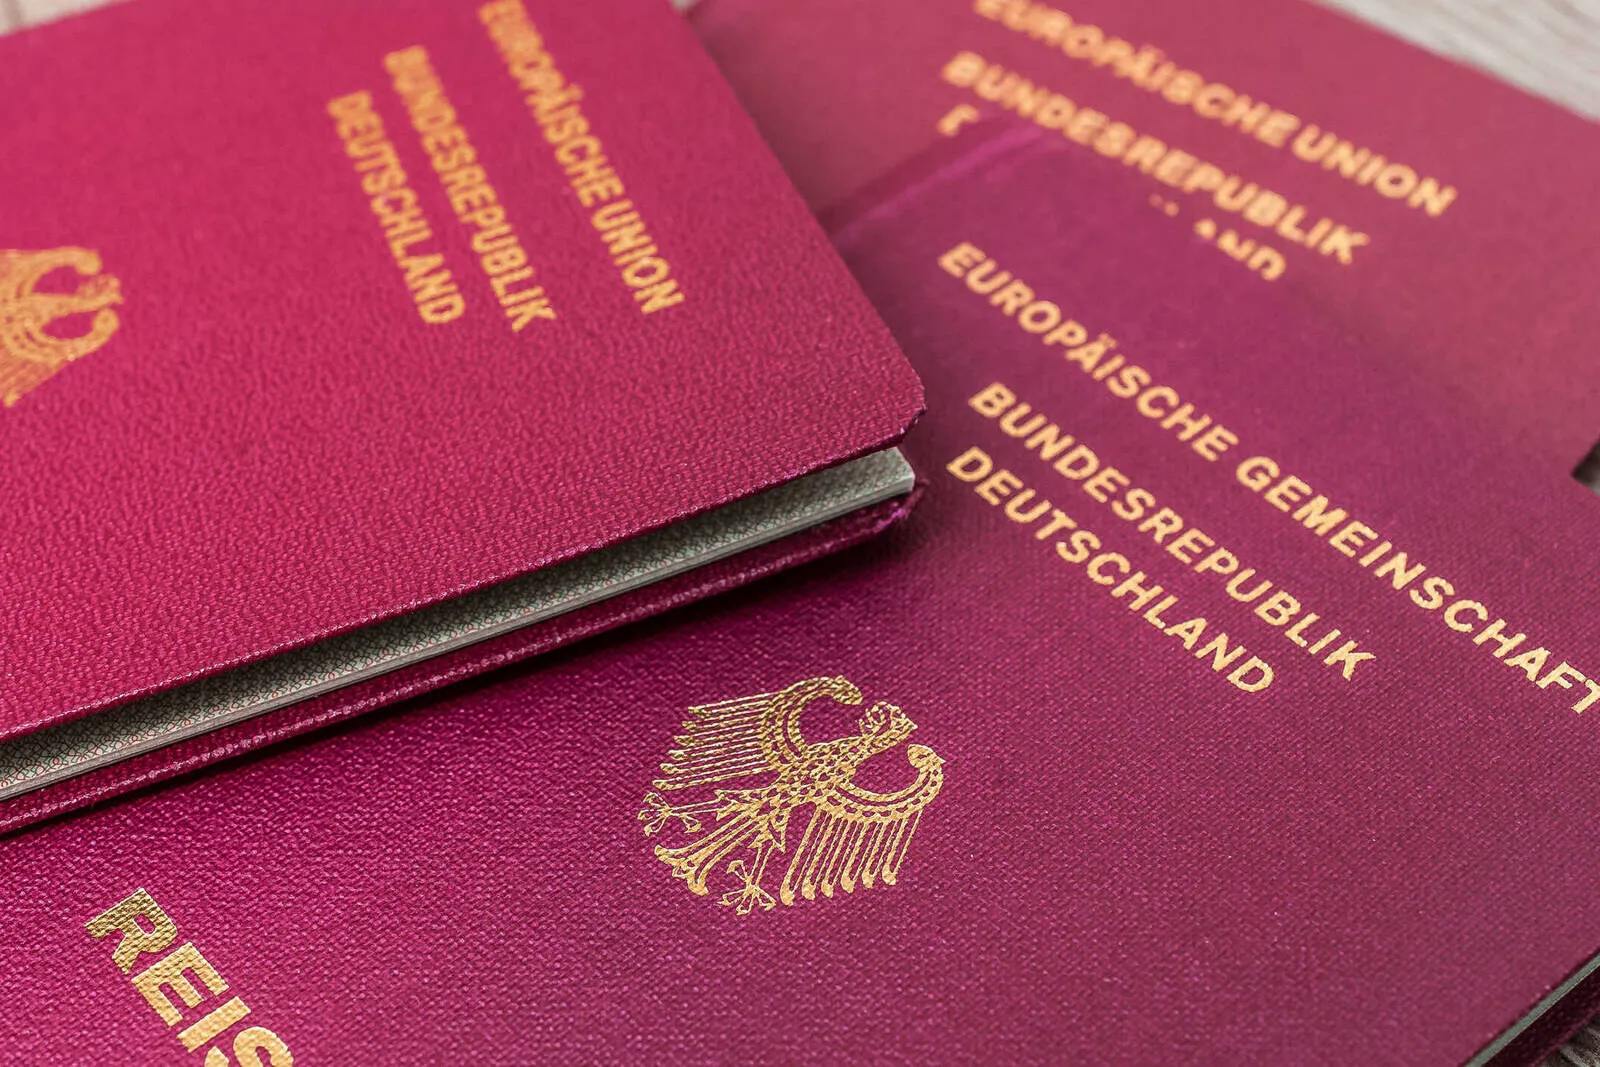 „Extremismusbekämpfung“: Regierung will Bürgern Reisepass entziehen